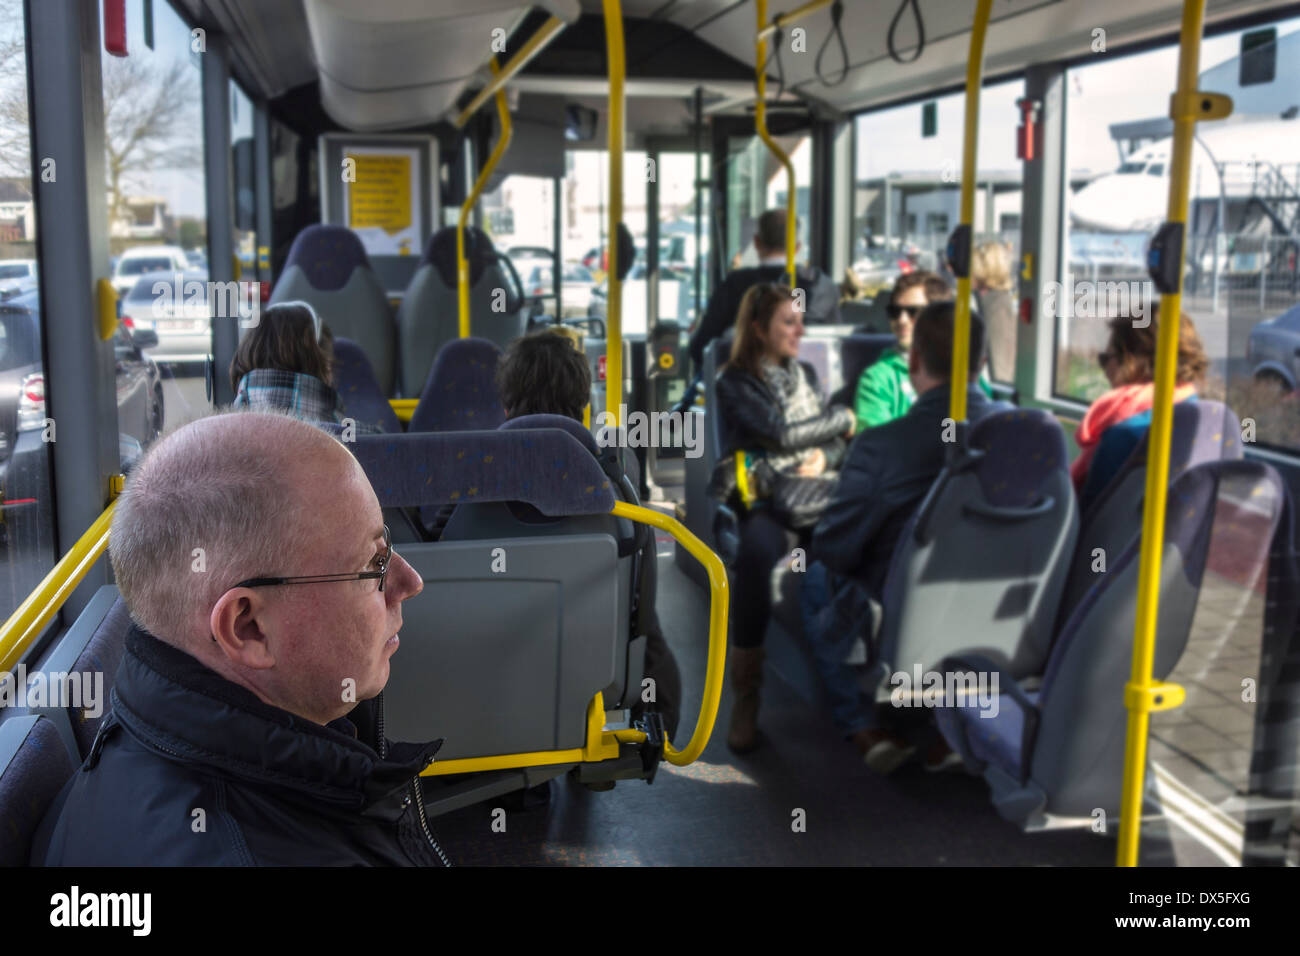 Passagiers Op bus van De Lijn Passagiere sitzen im Linienverkehr Bus von De Lijn, flämische Transportunternehmen in Belgien Stockfoto